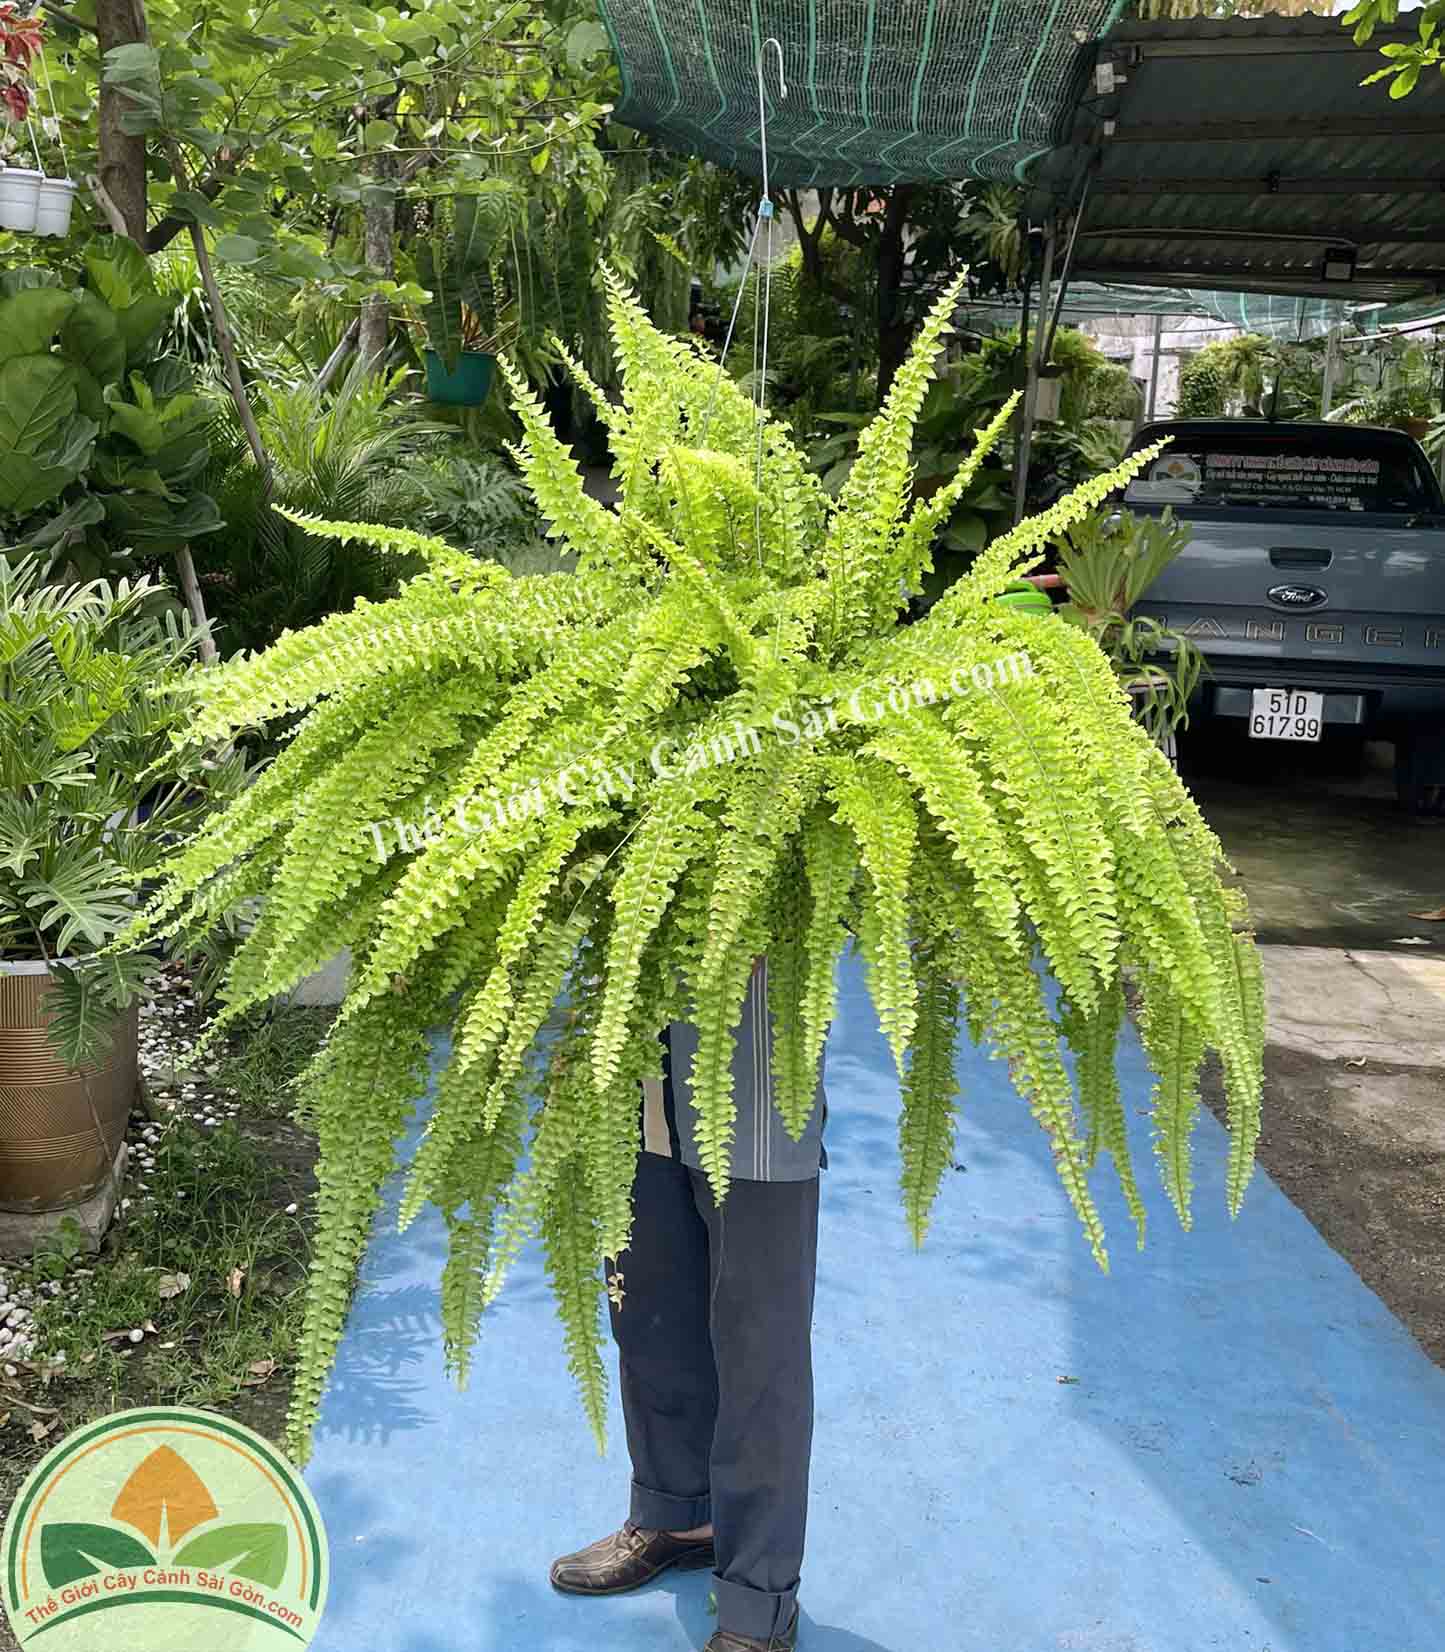 Cây dương xỉ thòng thái lá xoăn - Thế Giới Cây Cảnh Sài Gòn